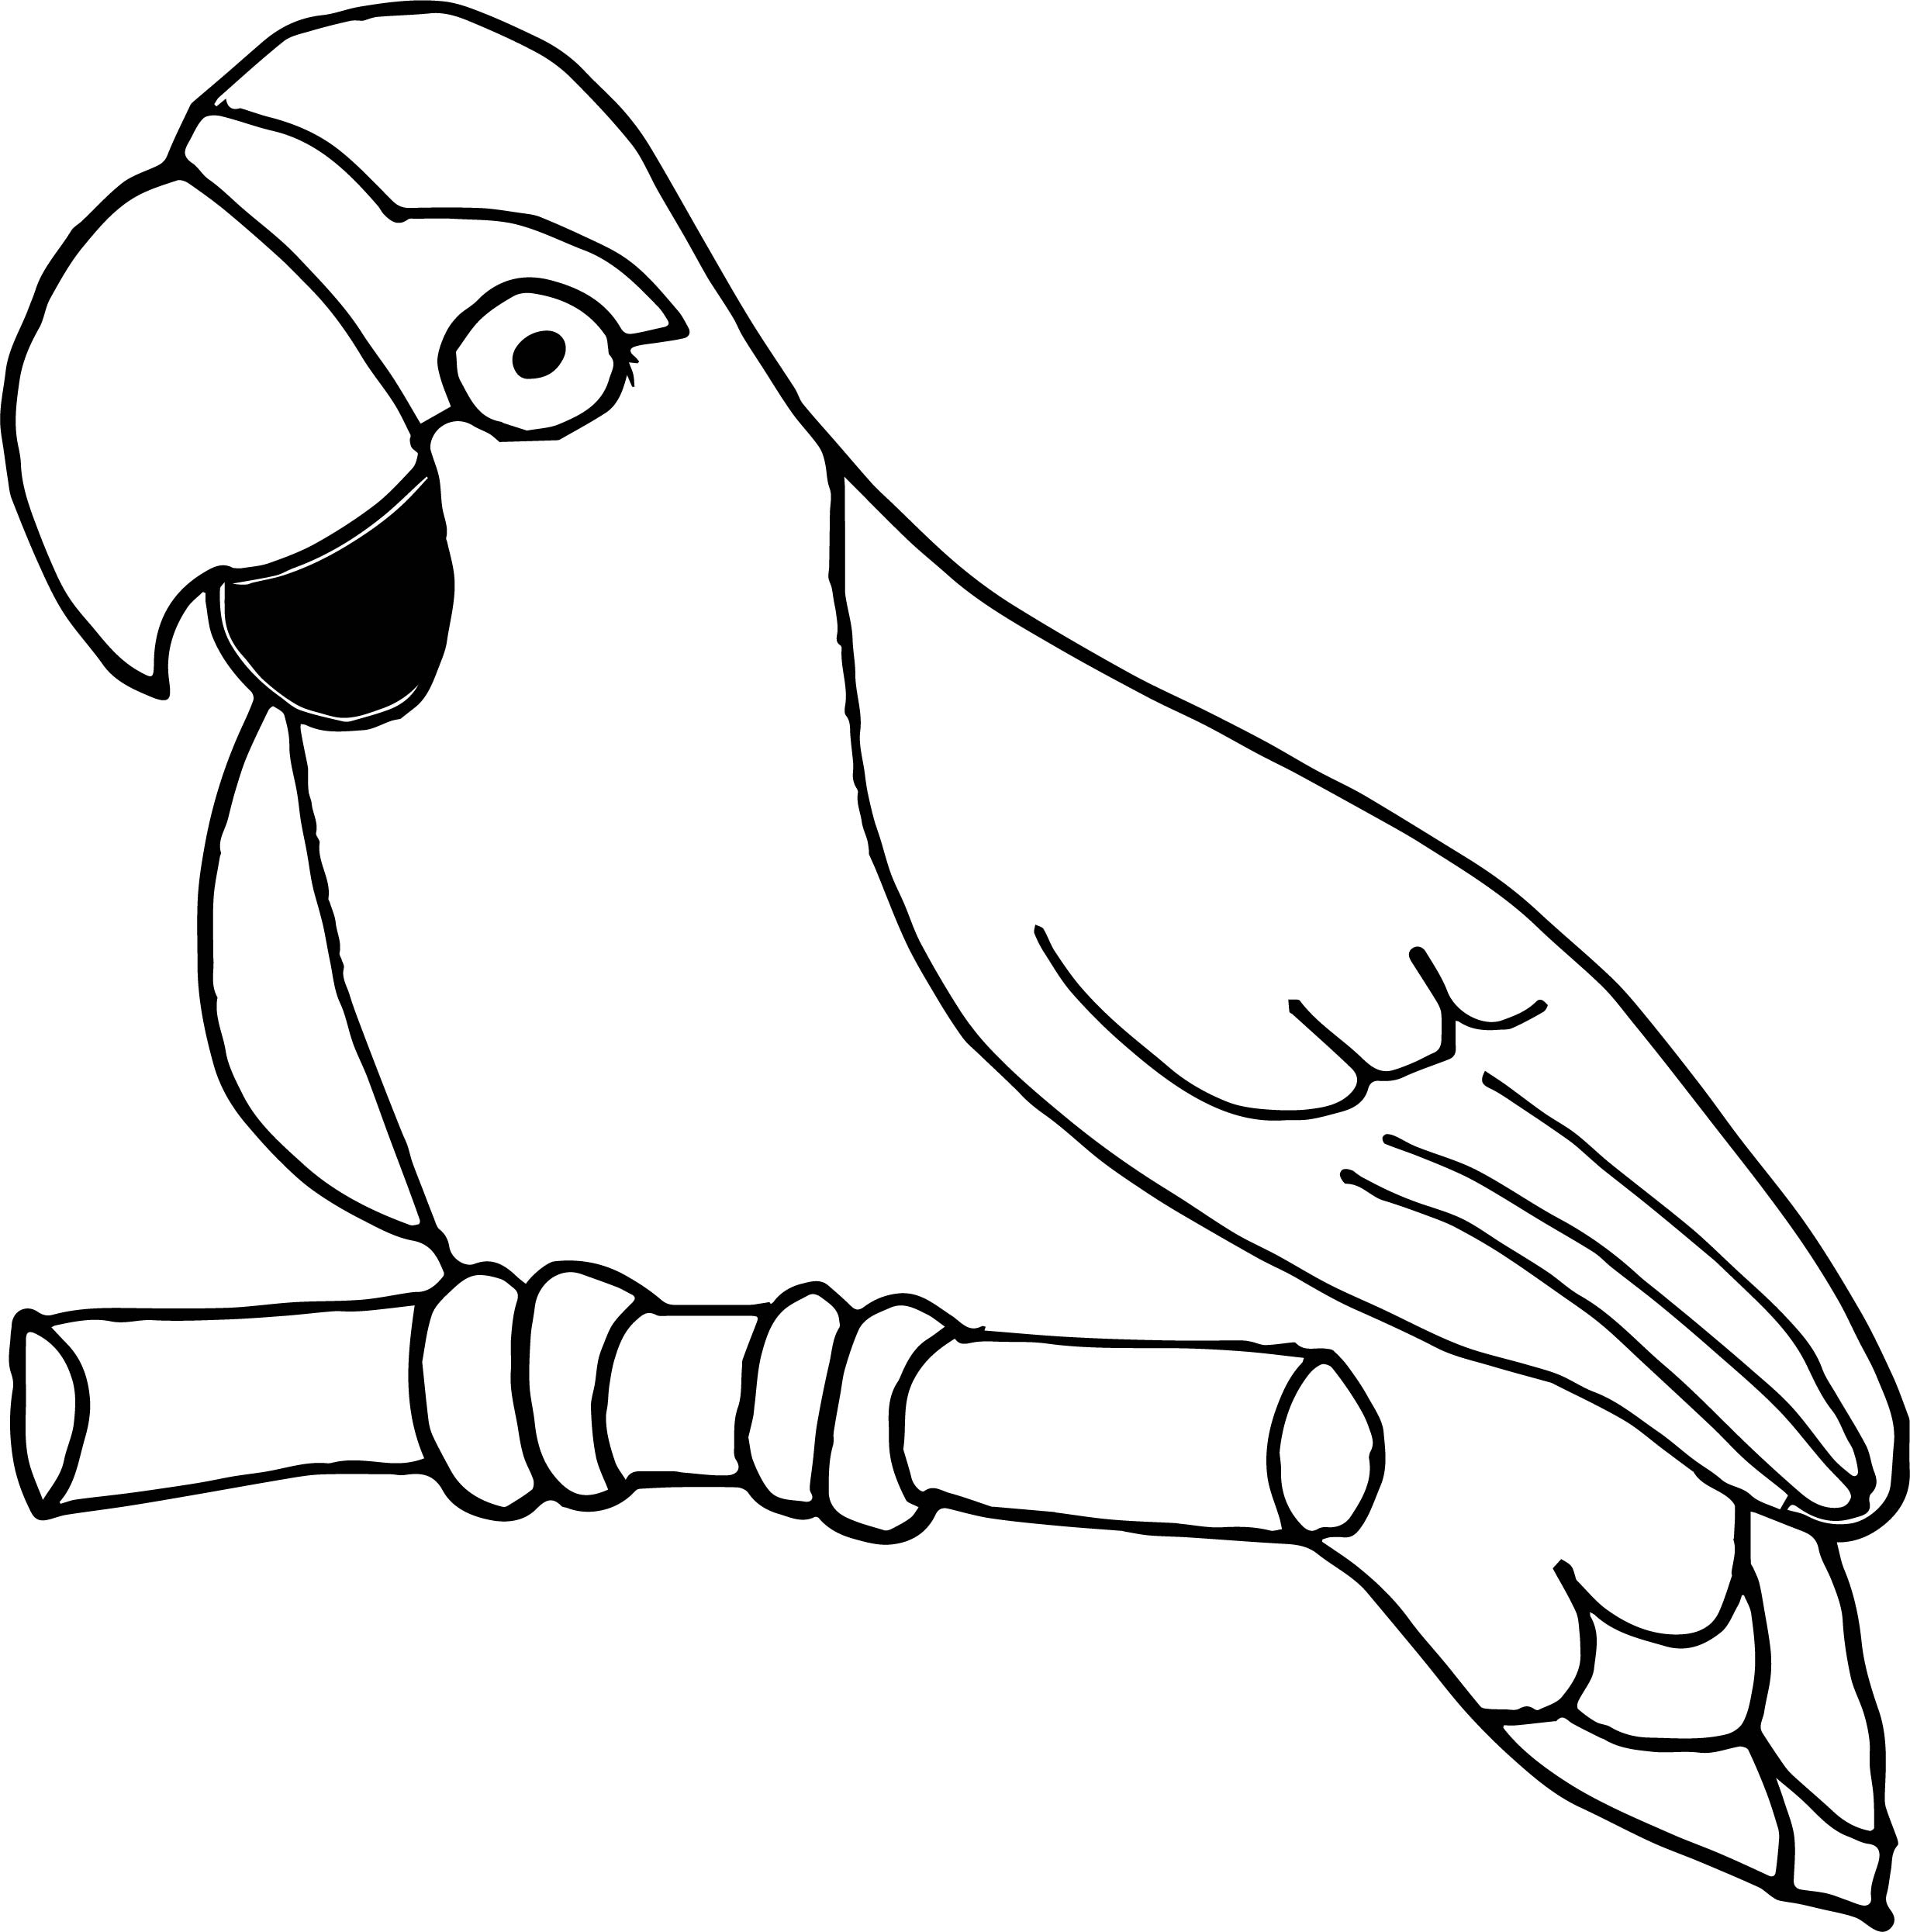 Эскиз попугая карандашом для аппликации